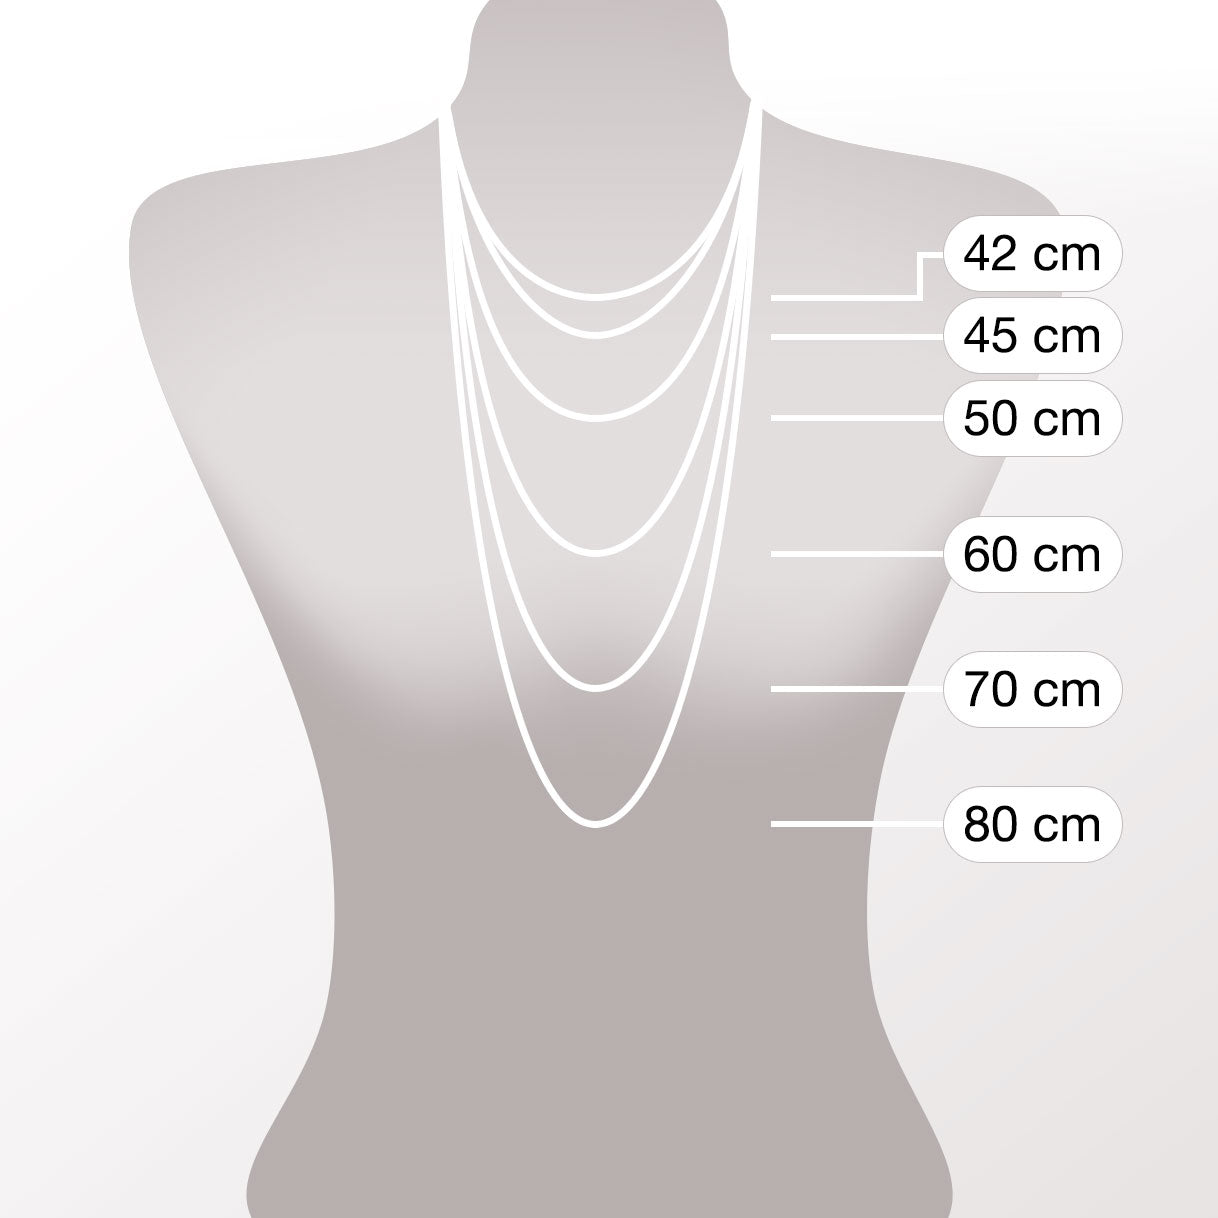 Halskette 42cm stahl/klar Isa Sommer Special